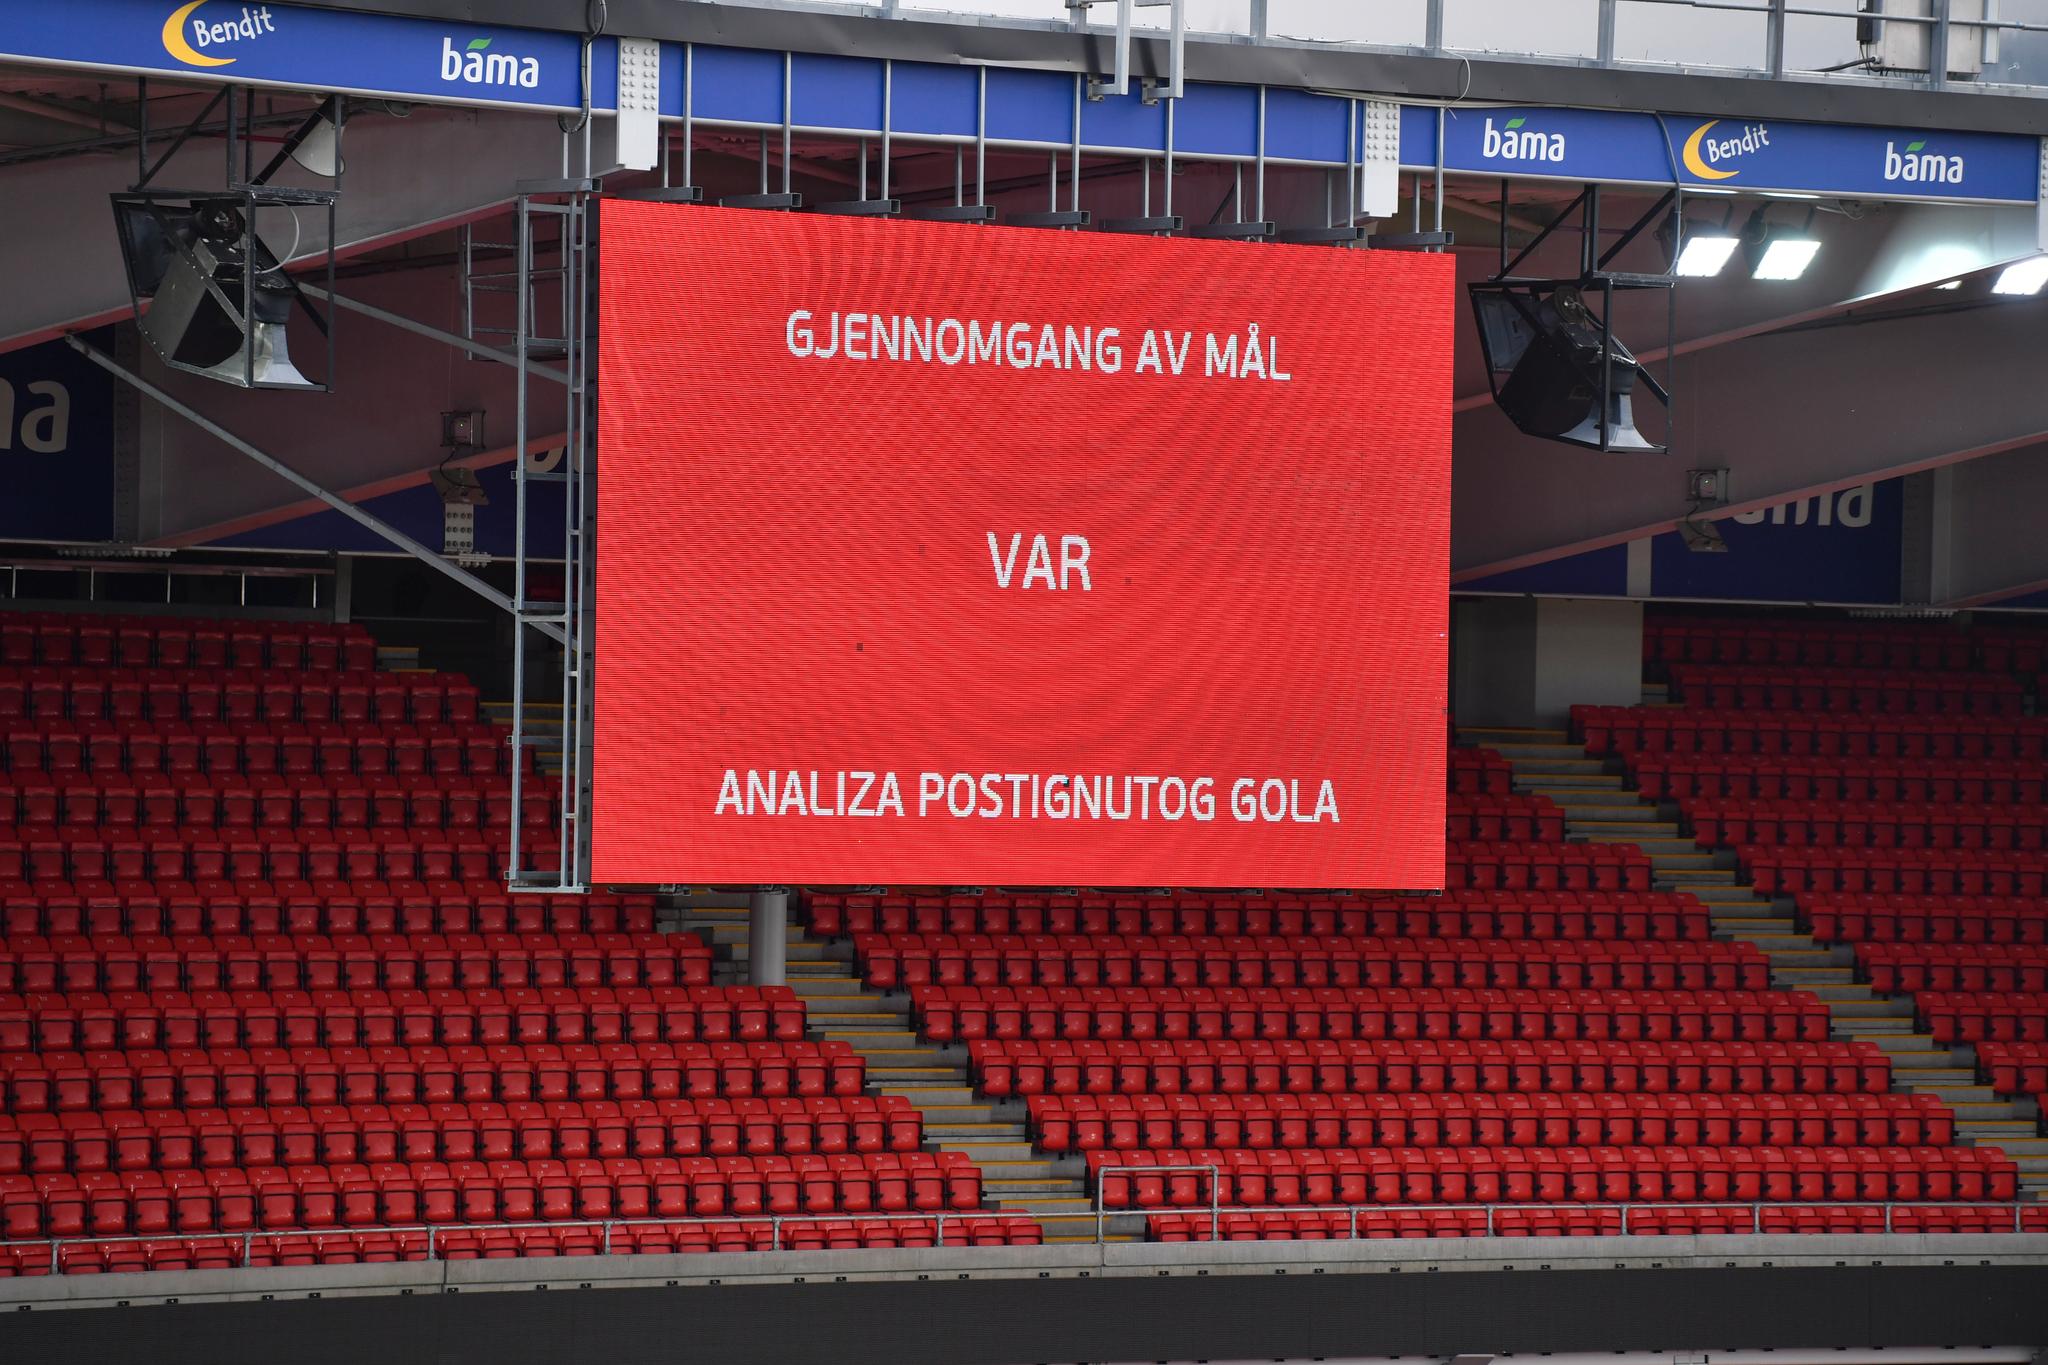 VAR TIL NORGE I 2023: VAR-testing på Ullevaal stadion før semifinalen mellom Norge og Serbia om plassen til fotball-EM i 2021.